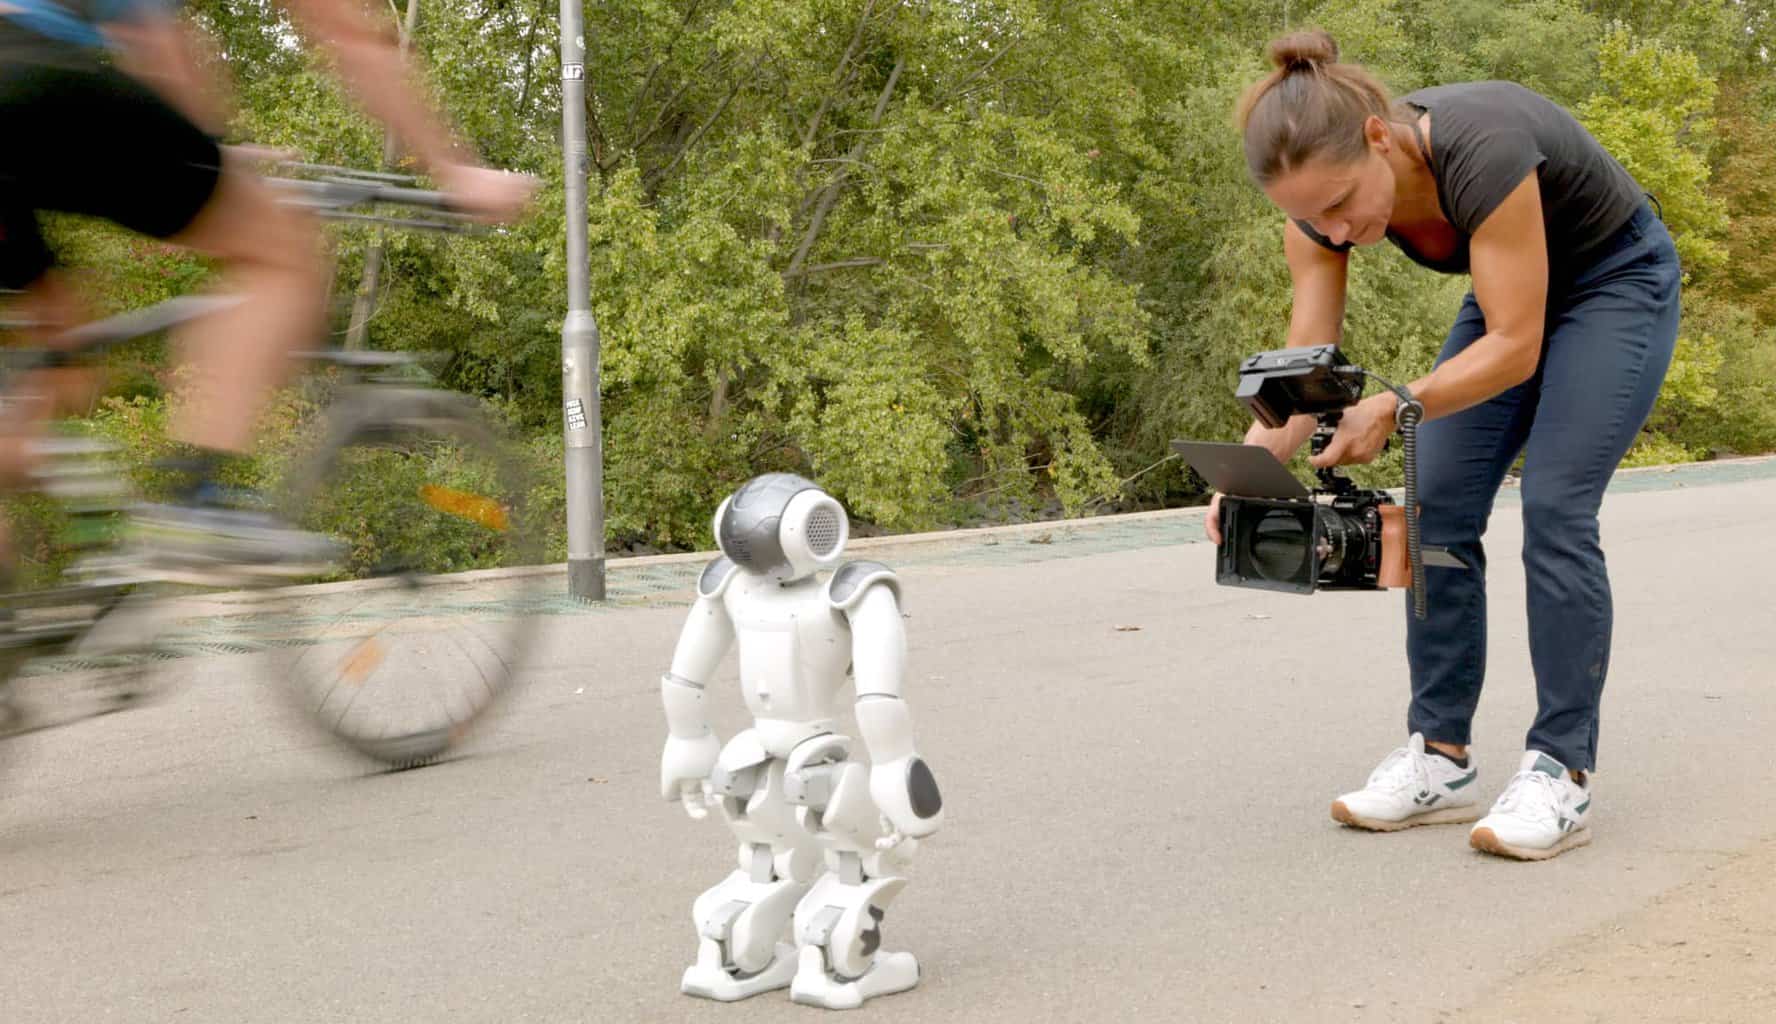 Person filmt einen etwa 50 cm hohen Roboter, der auf sie zufÃ¤uft